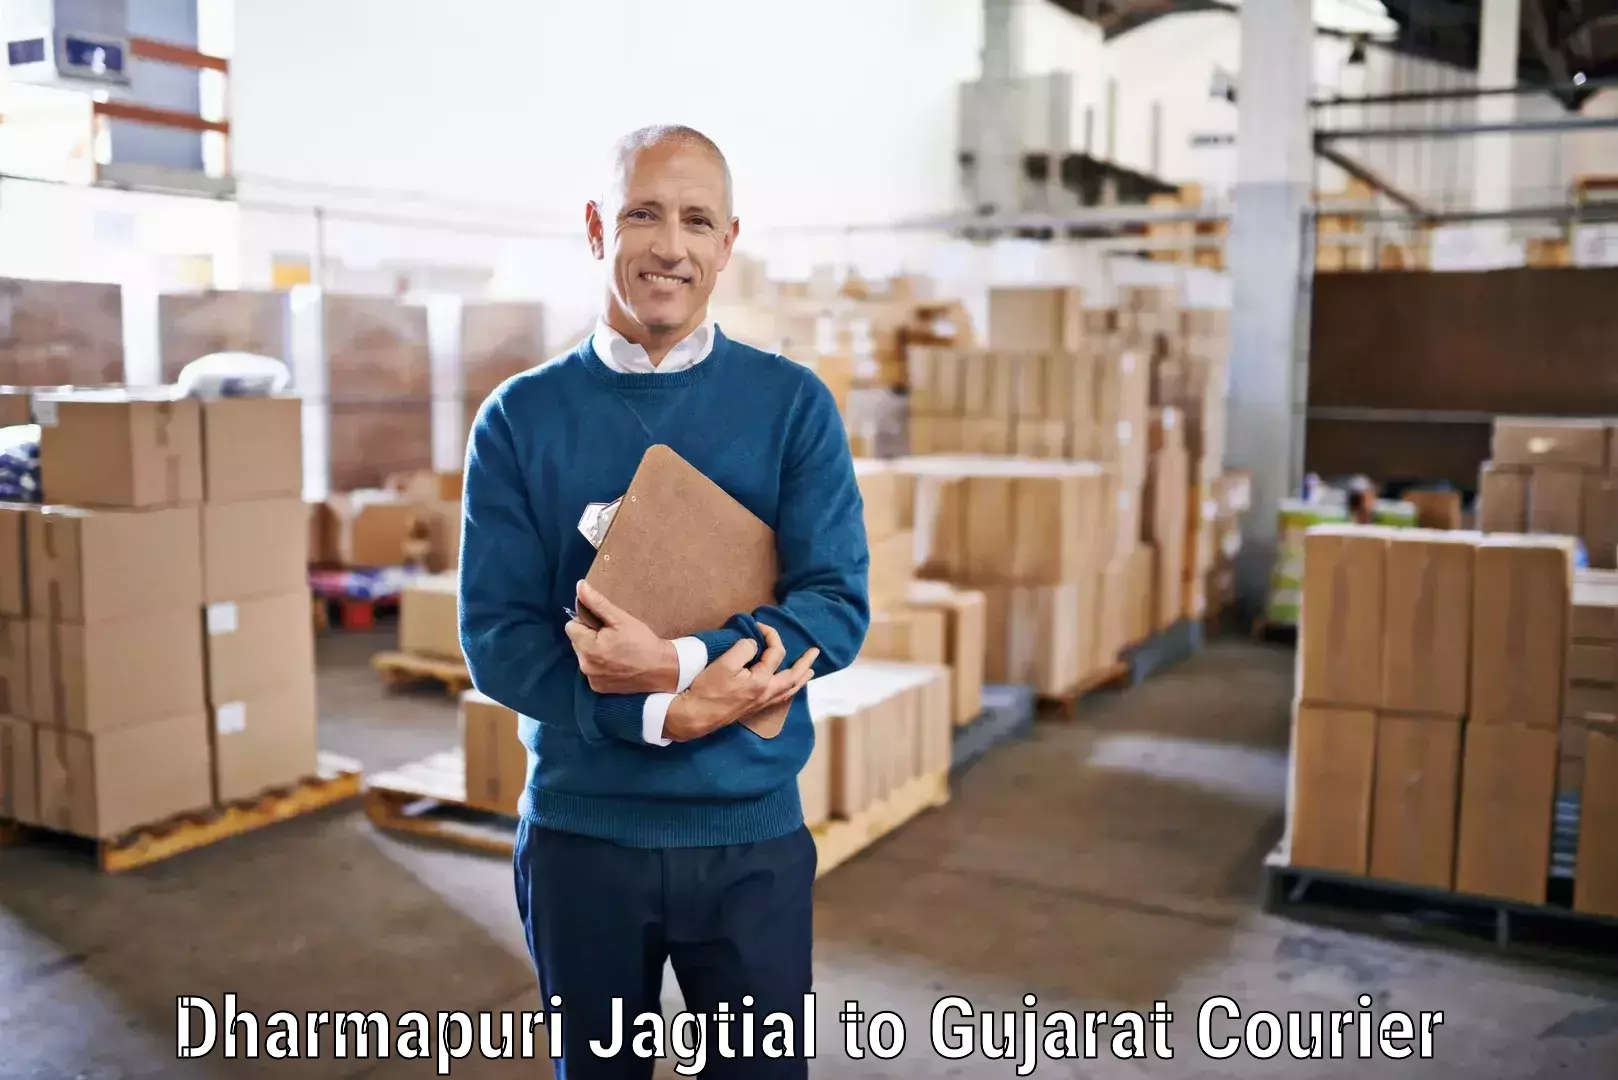 Door-to-door freight service Dharmapuri Jagtial to Gandhinagar